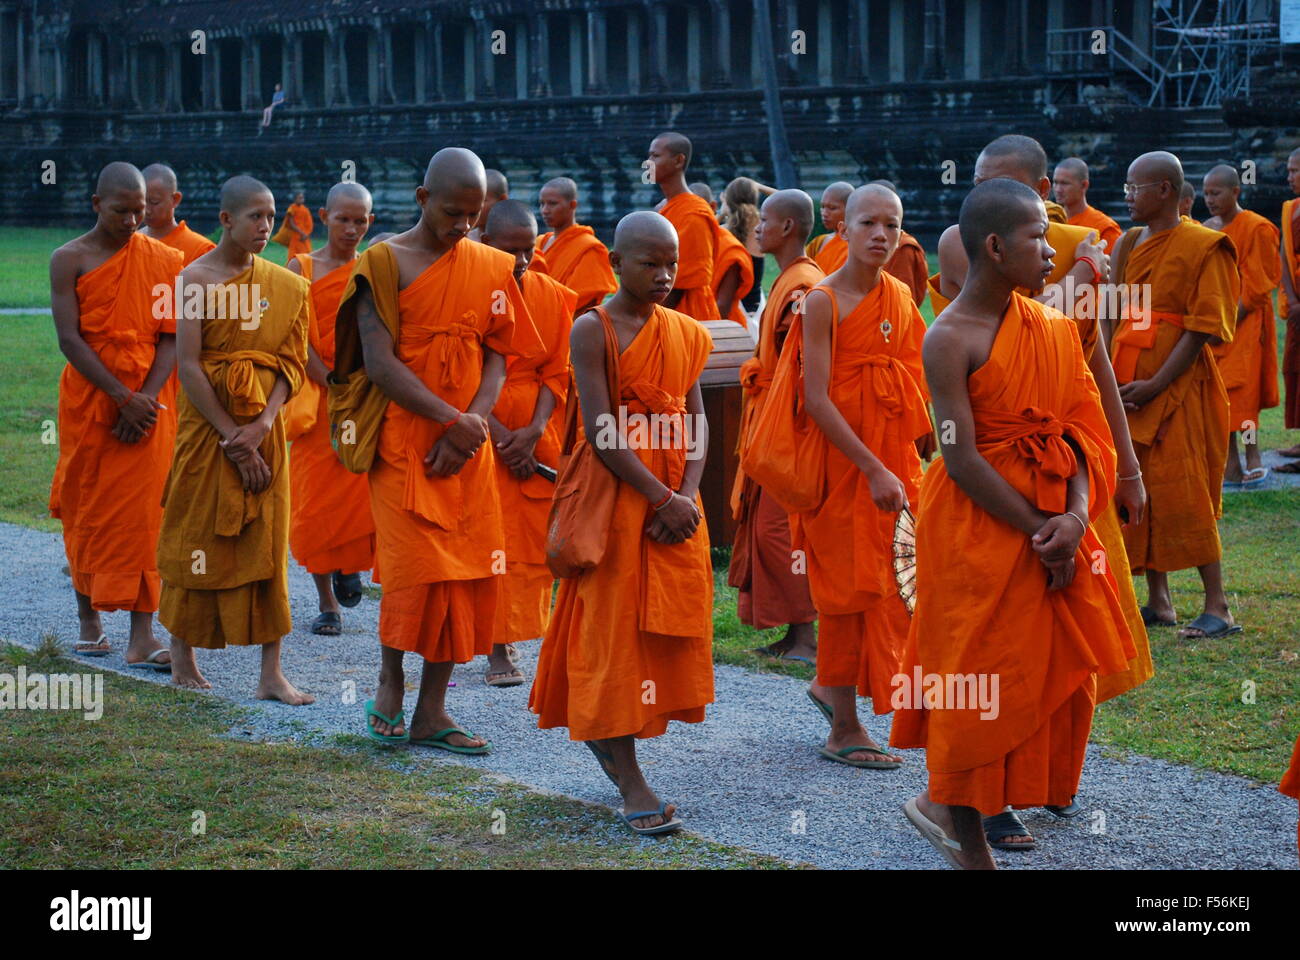 La linea dei monaci buddisti a piedi passato Angkor Wat complesso. Angkor Wat è stato per la prima volta un Indù, successivamente, un tempio buddista complesso. Foto Stock